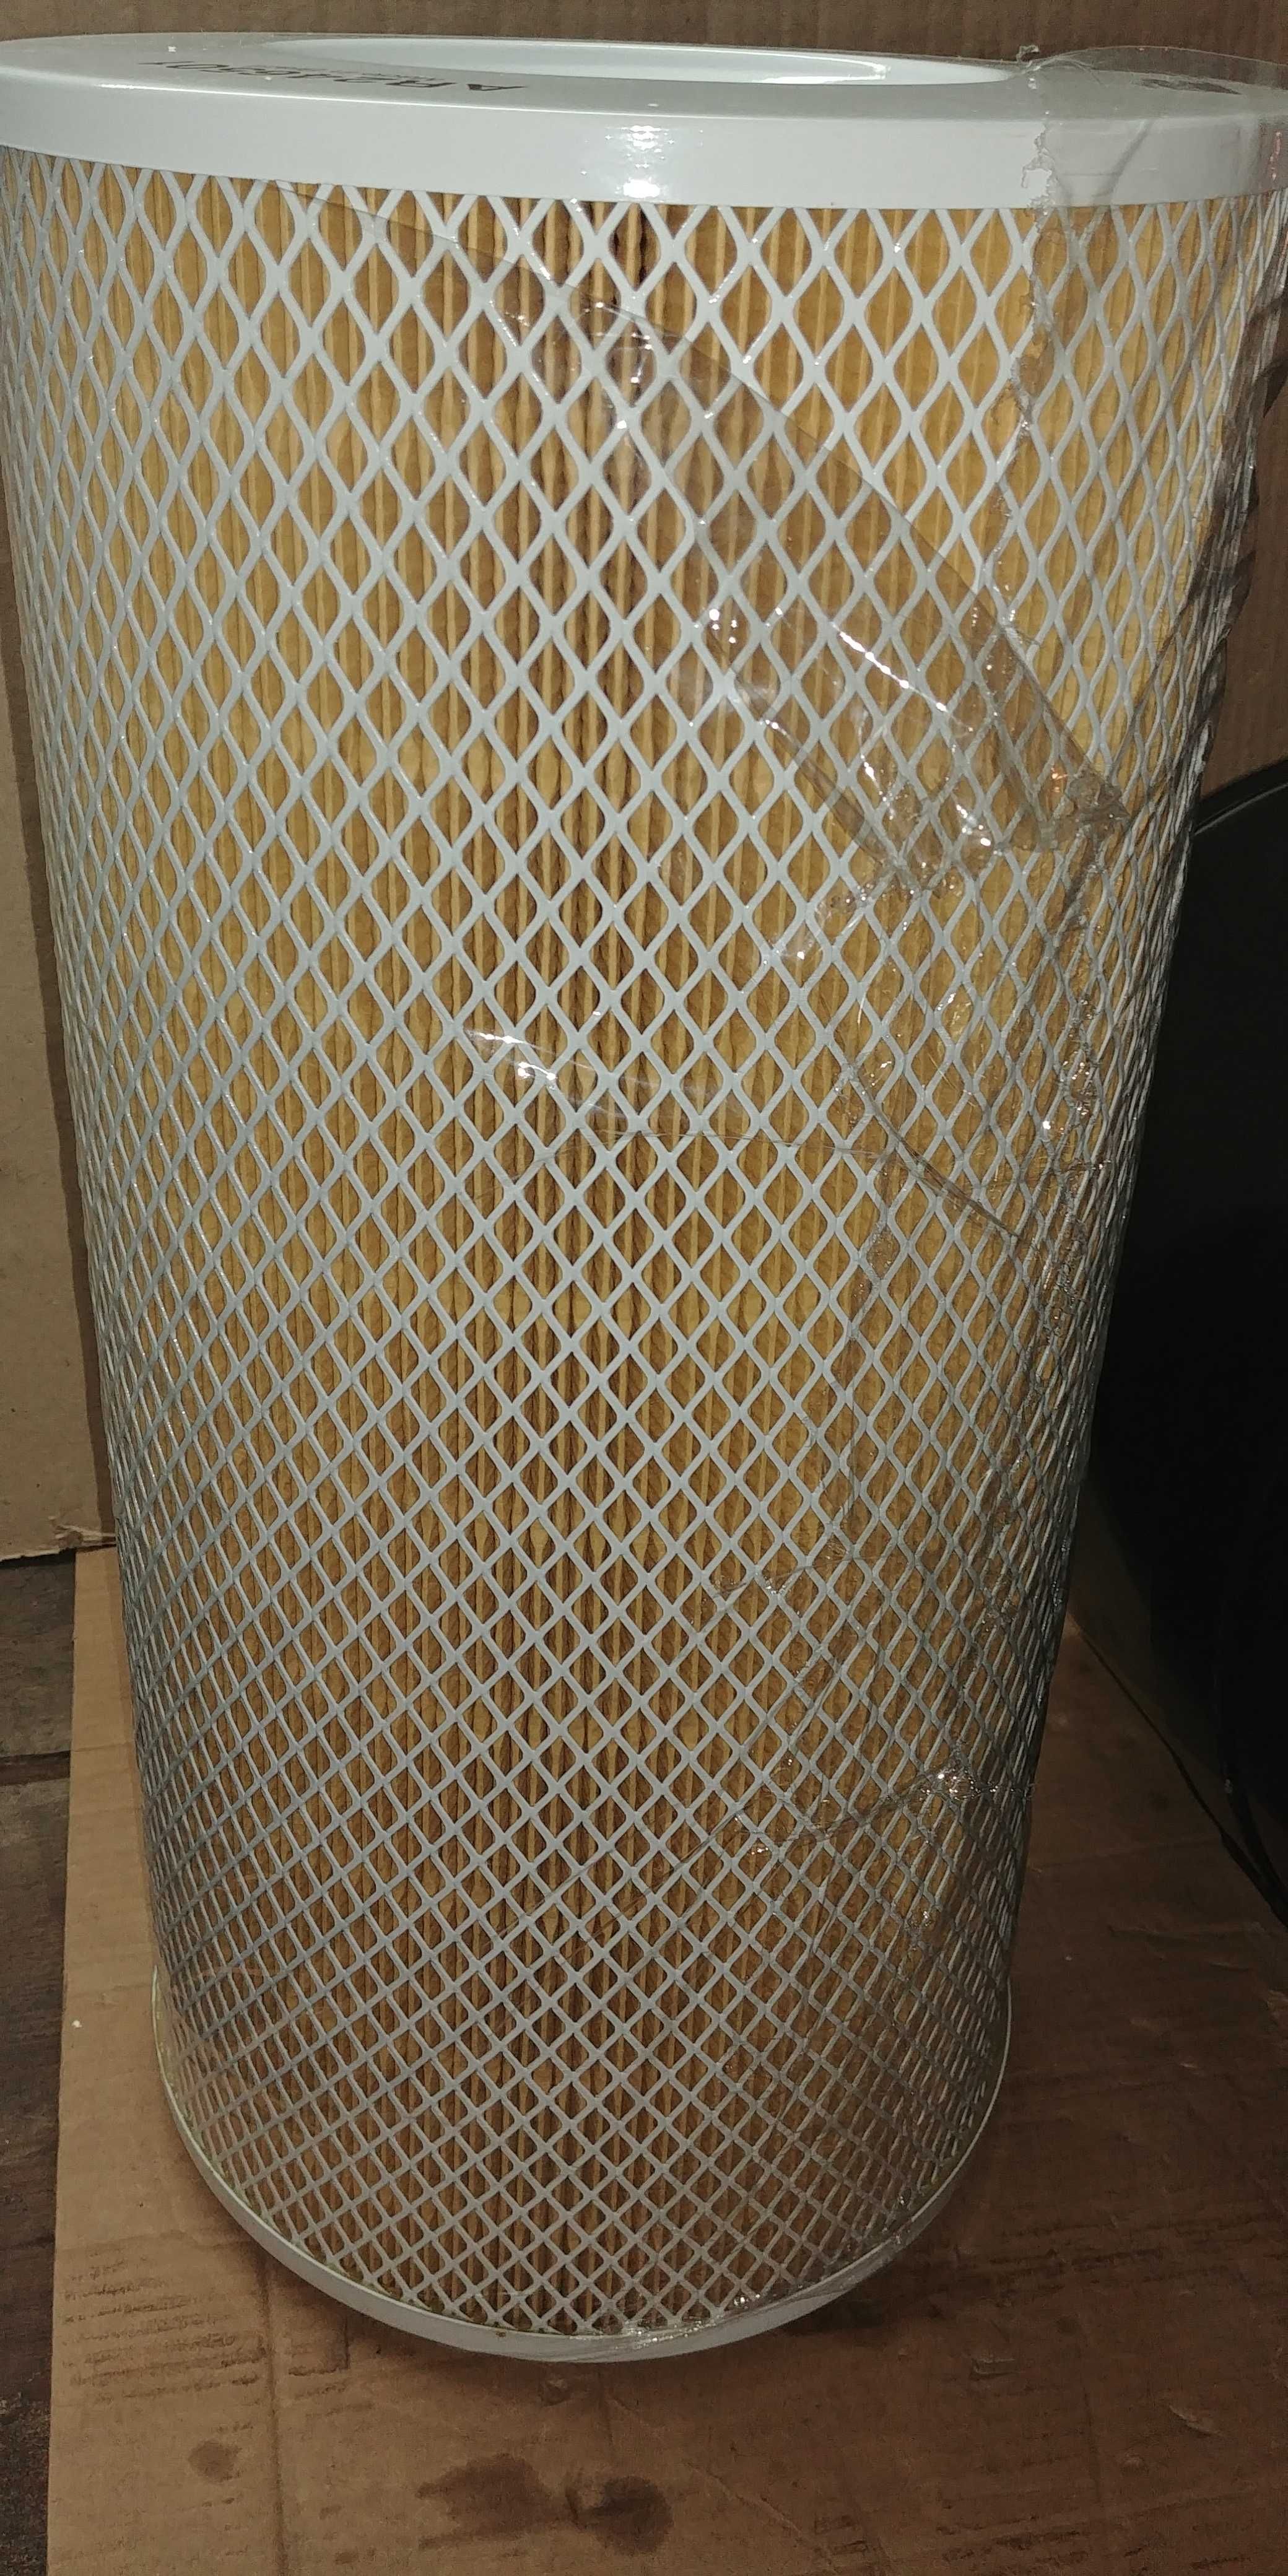 PARKER RACOR filtr powietrza w obudowie metalowej